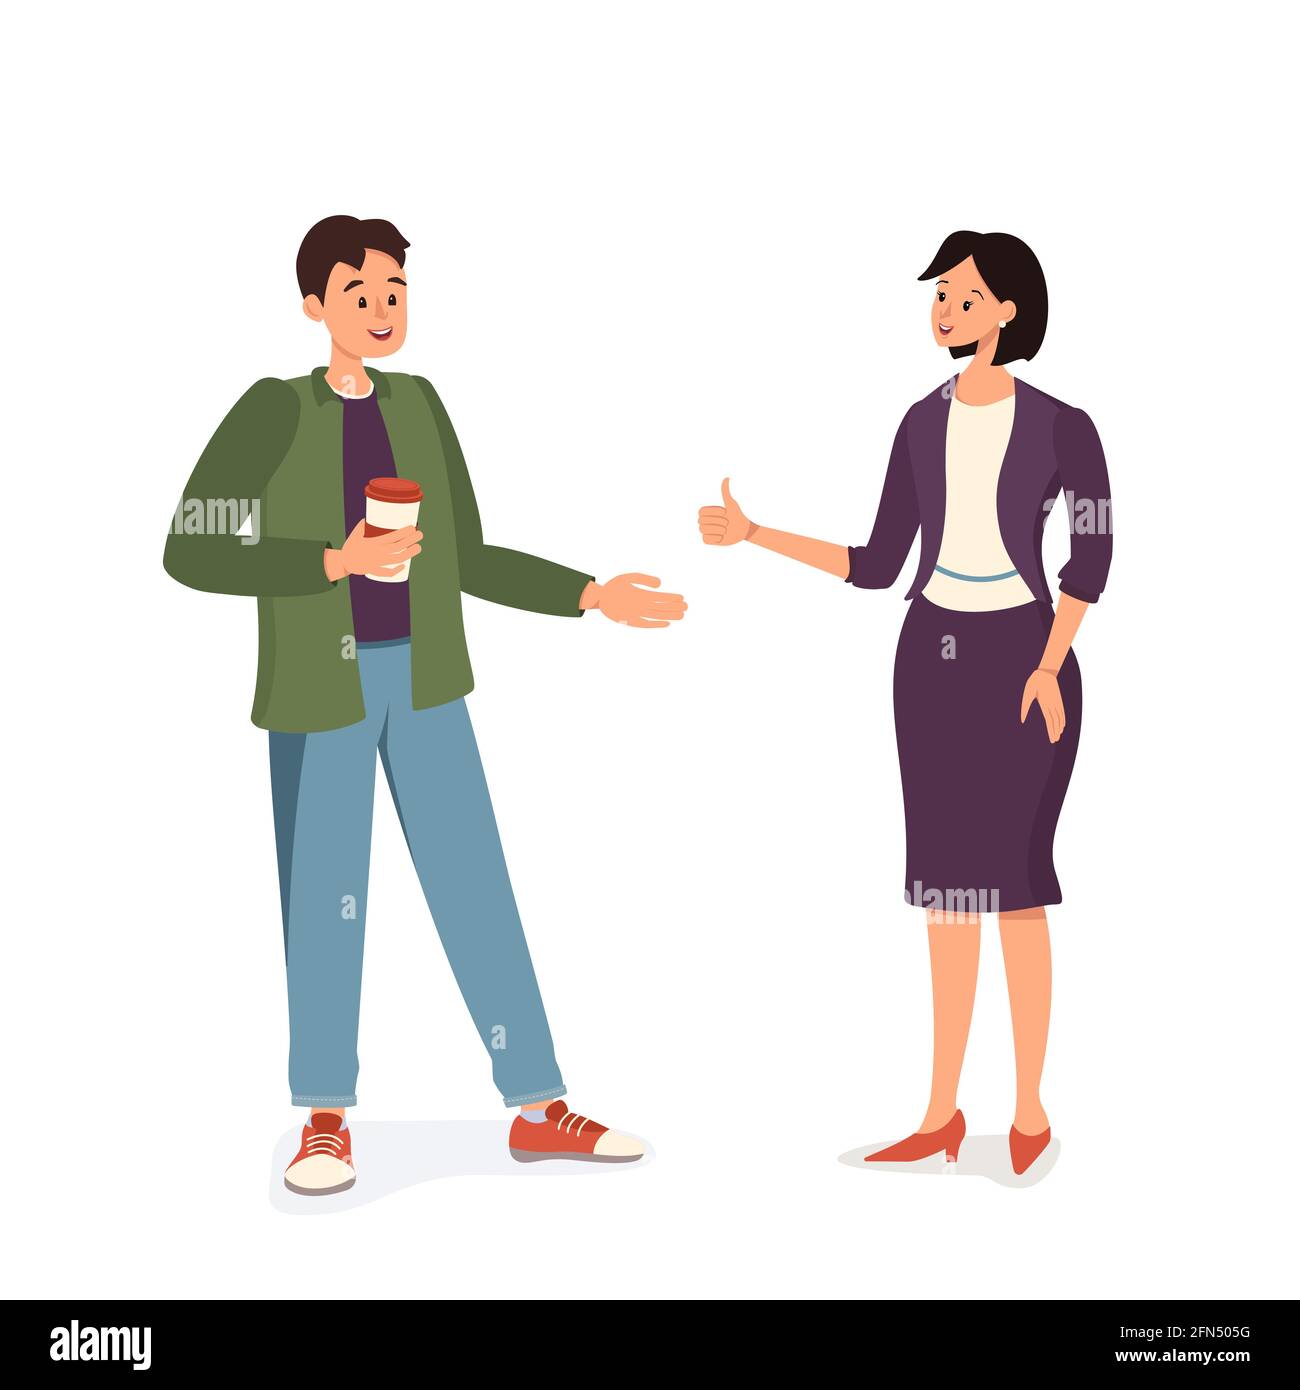 Un homme avec une tasse de café et une femme en costume parlent. Réunion de travail ou réunion amicale. Les gens heureux communiquent et s'encouragent mutuellement Illustration de Vecteur